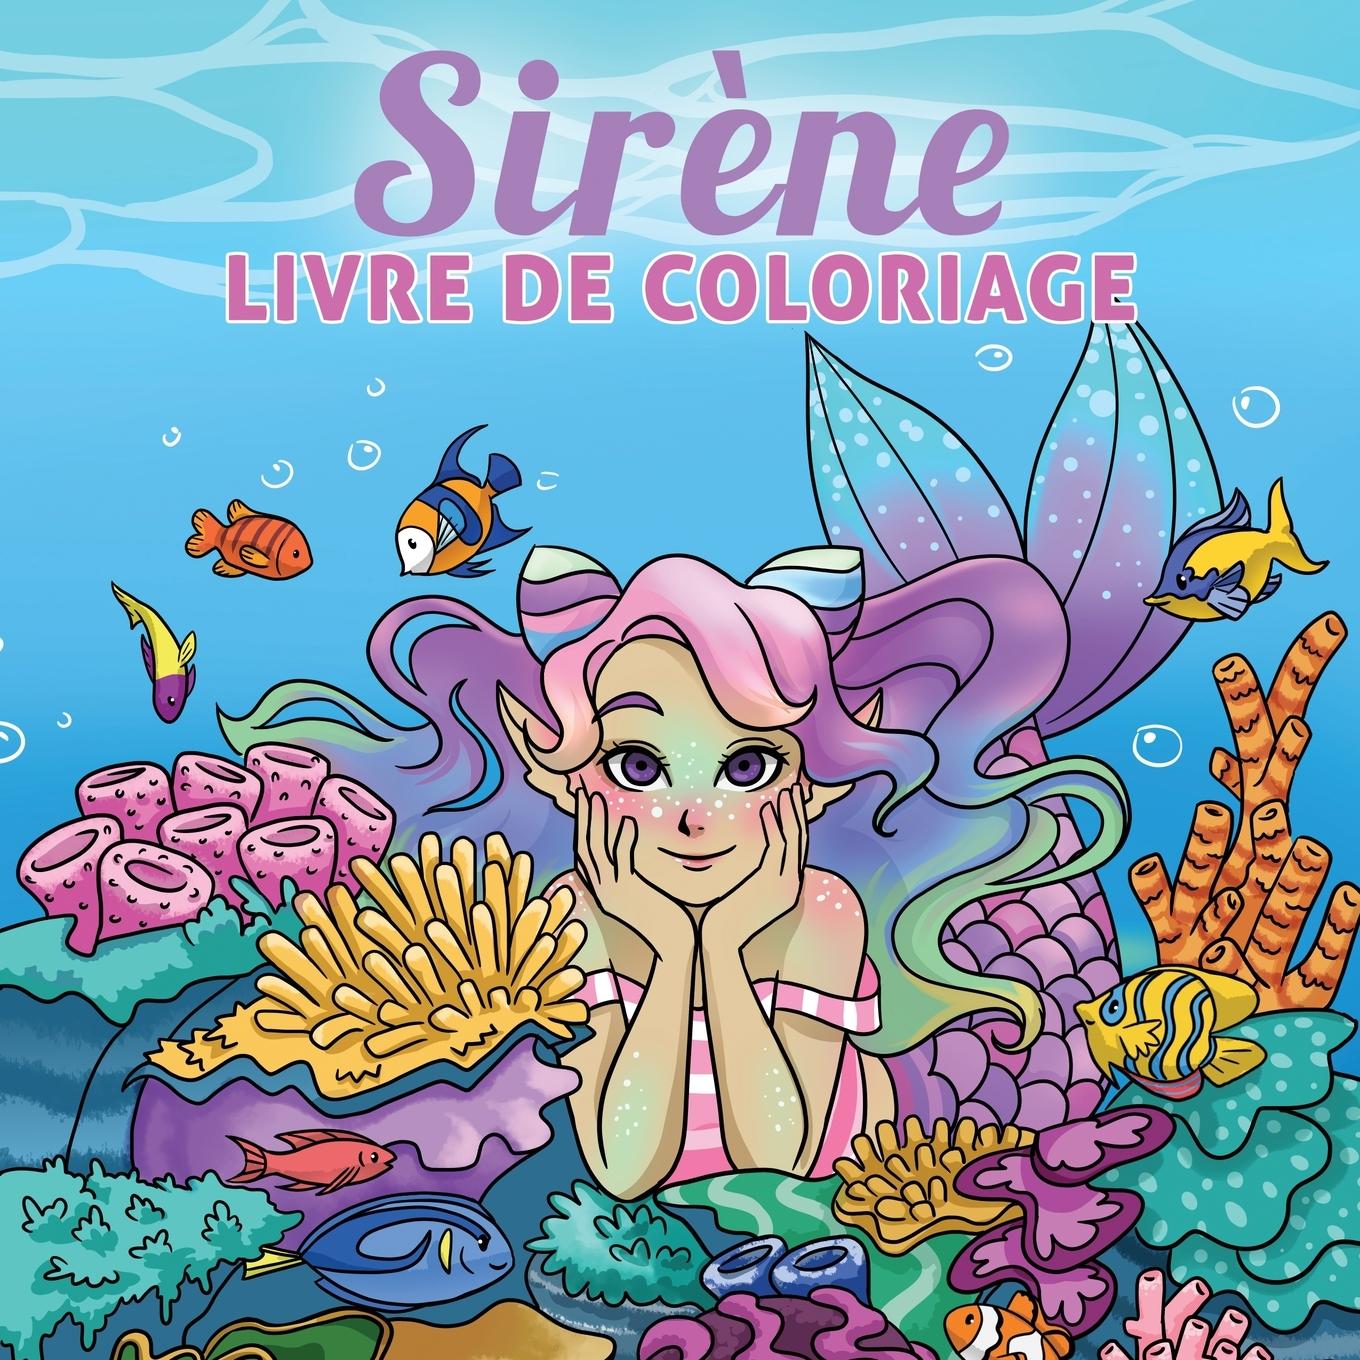 Carte Sirene livre de coloriage 